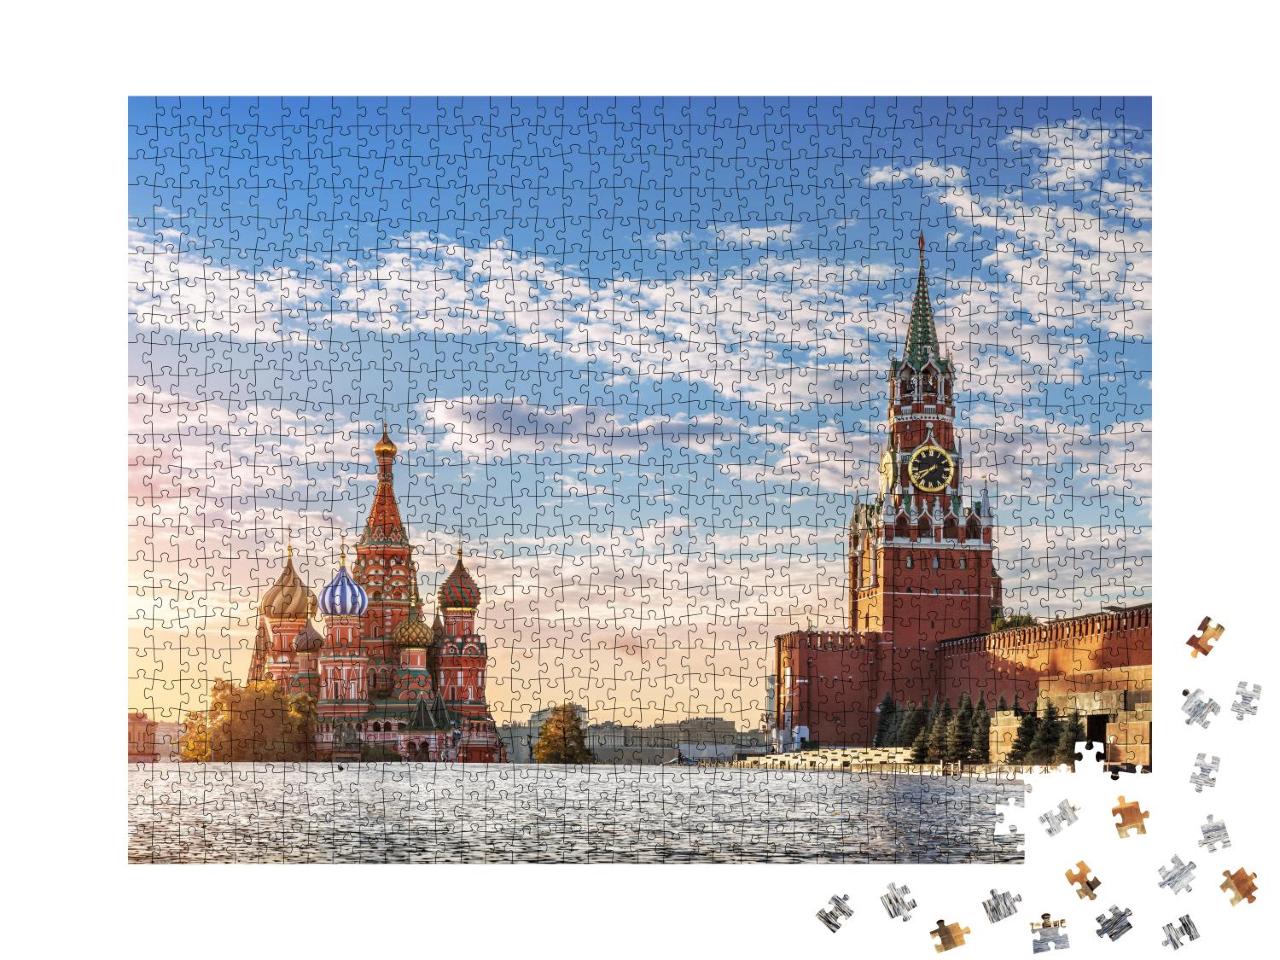 Puzzle 1000 Teile „Basilius-Kathedrale und Spasskaja-Turm auf dem Roten Platz in Moskau“